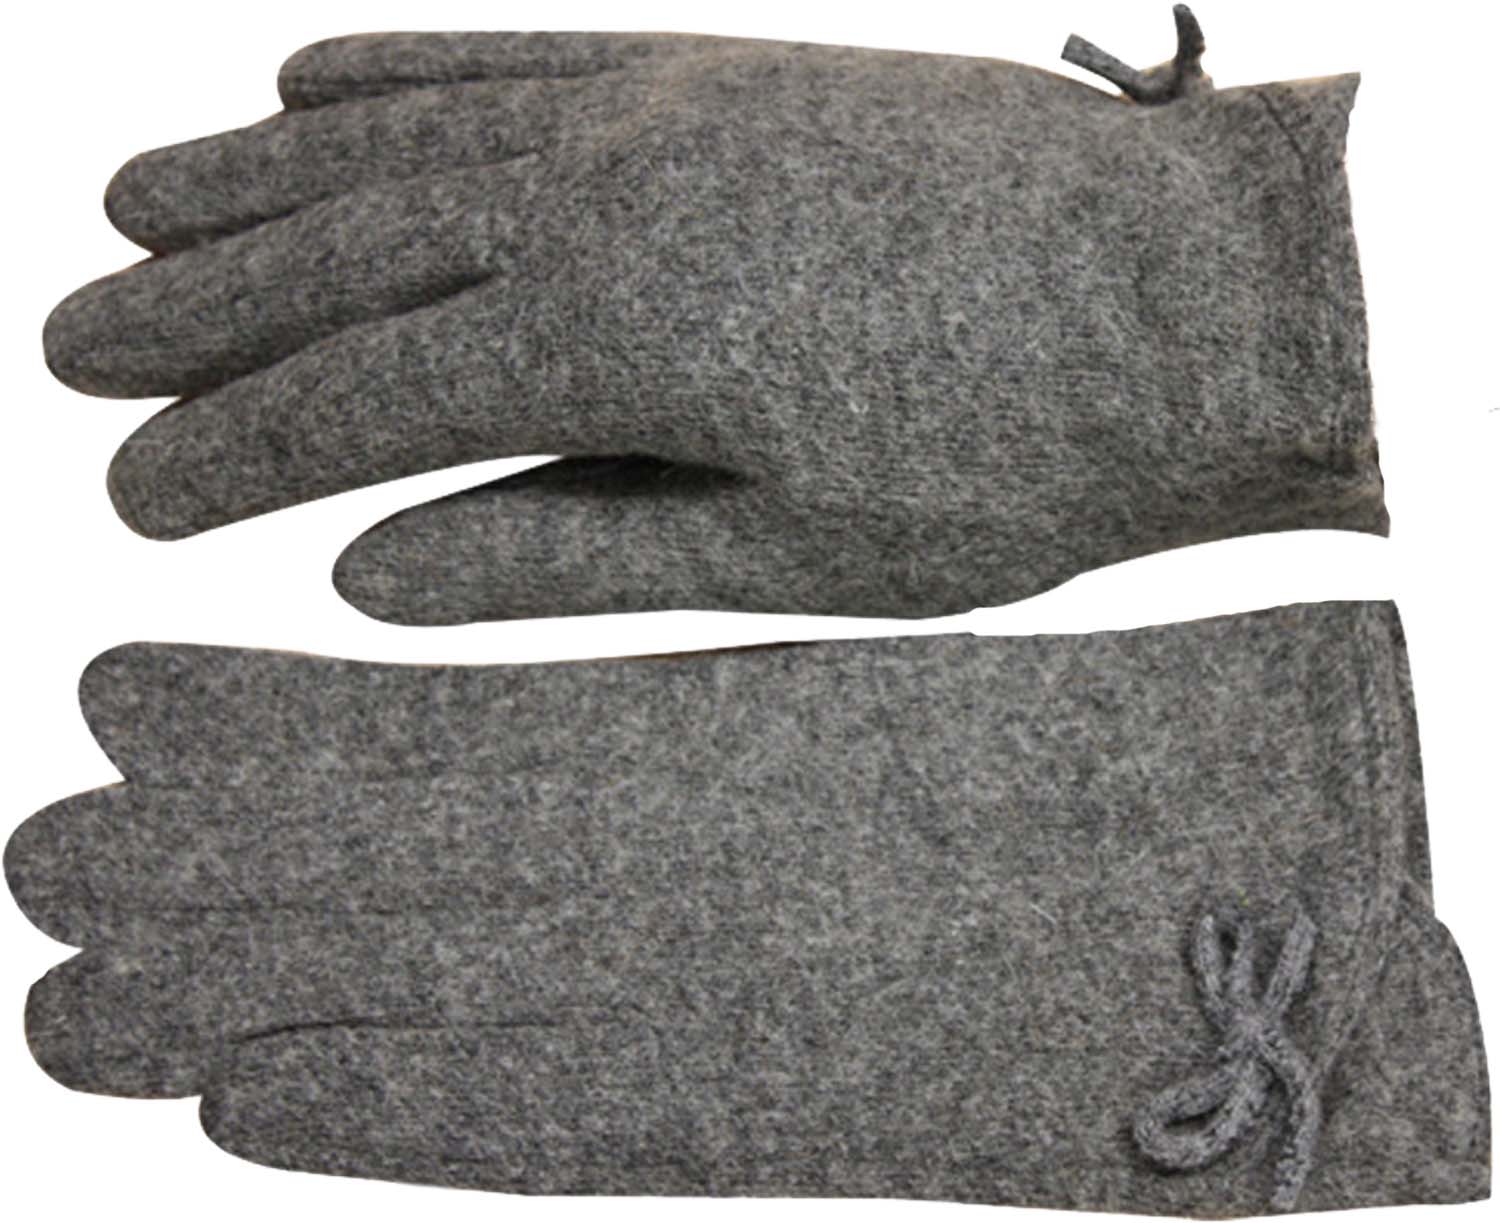 Handschuhe--Damen-Fingerhandschuhe-schmaler Schnitt-Wolle-Winter-Damenhandschuhe